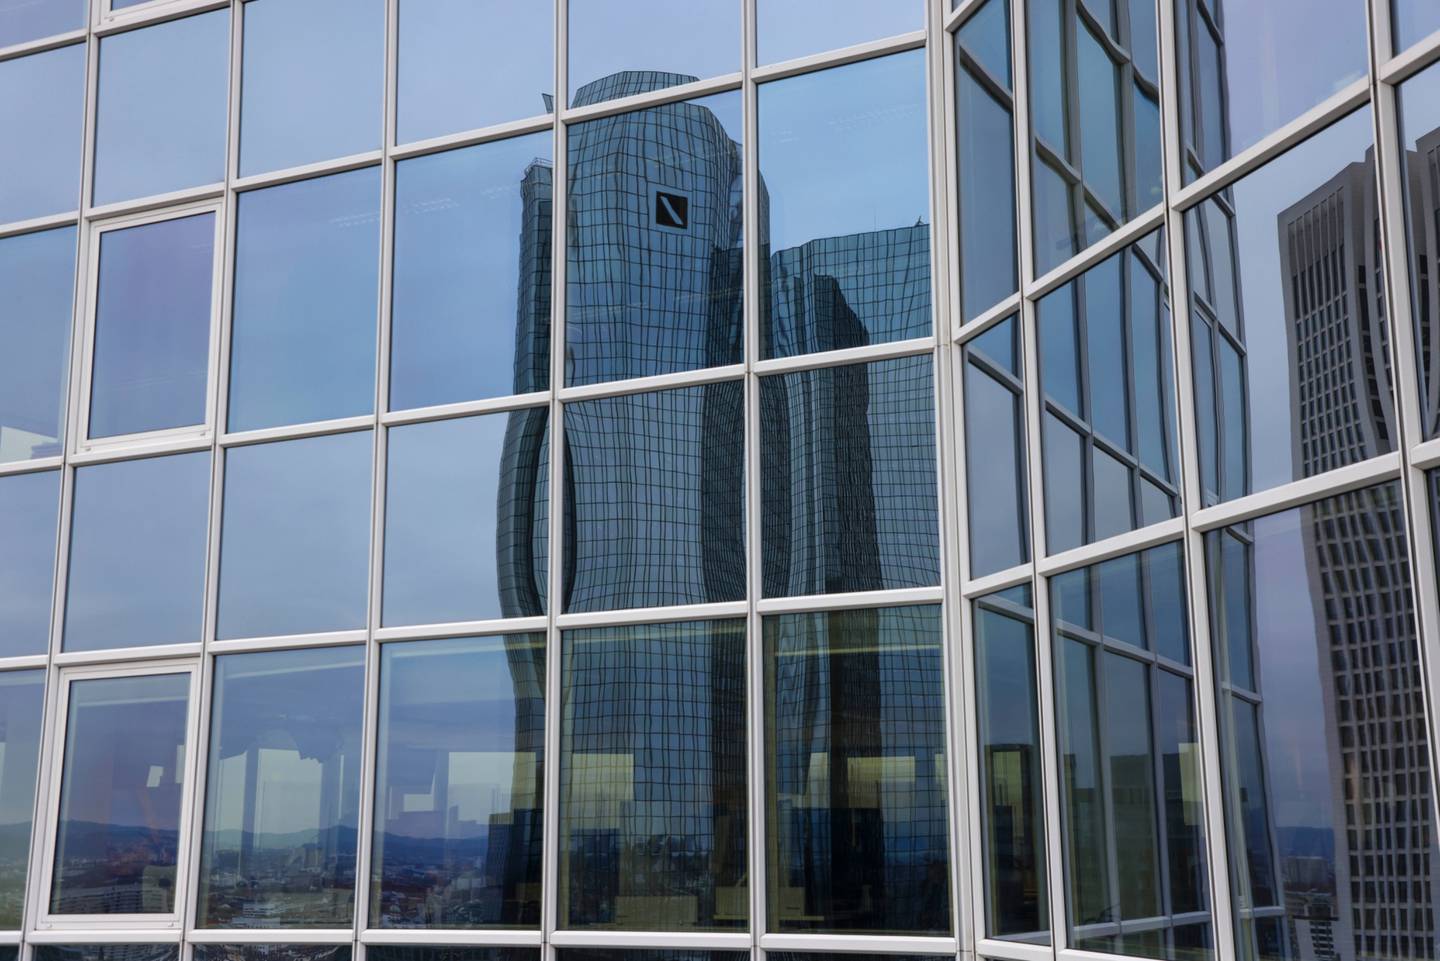 La sede del Deutsche Bank reflejada en las ventanas de un edificio de oficinas. Fotógrafo: Alex Kraus/Bloomberg